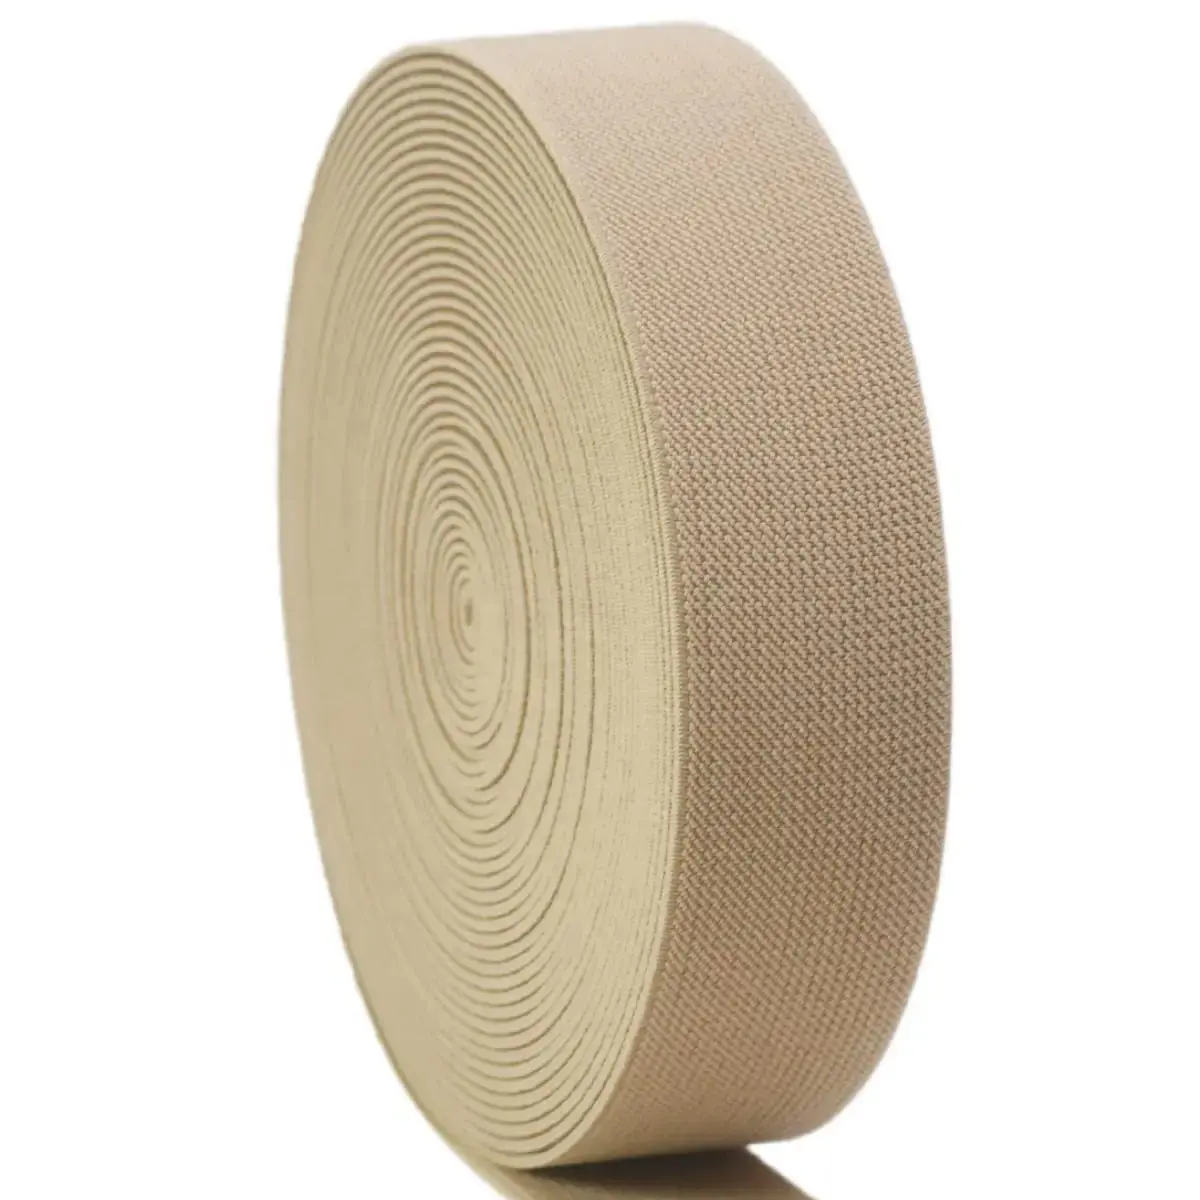 Großhandel kostenloses Muster Hersteller individuelles einstellbares elastisches Band